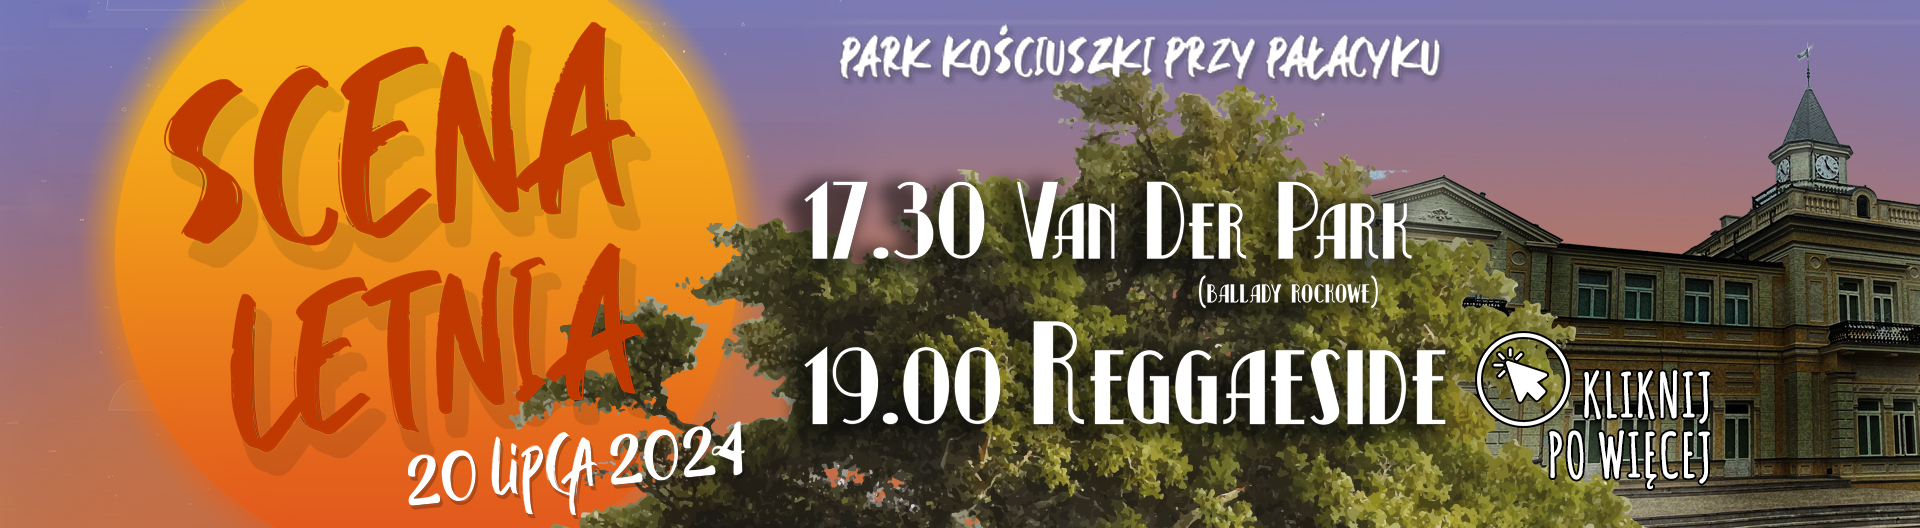 Scena Letnia - Koncert plenerowy zespołów Van Der Park i Reggaeside